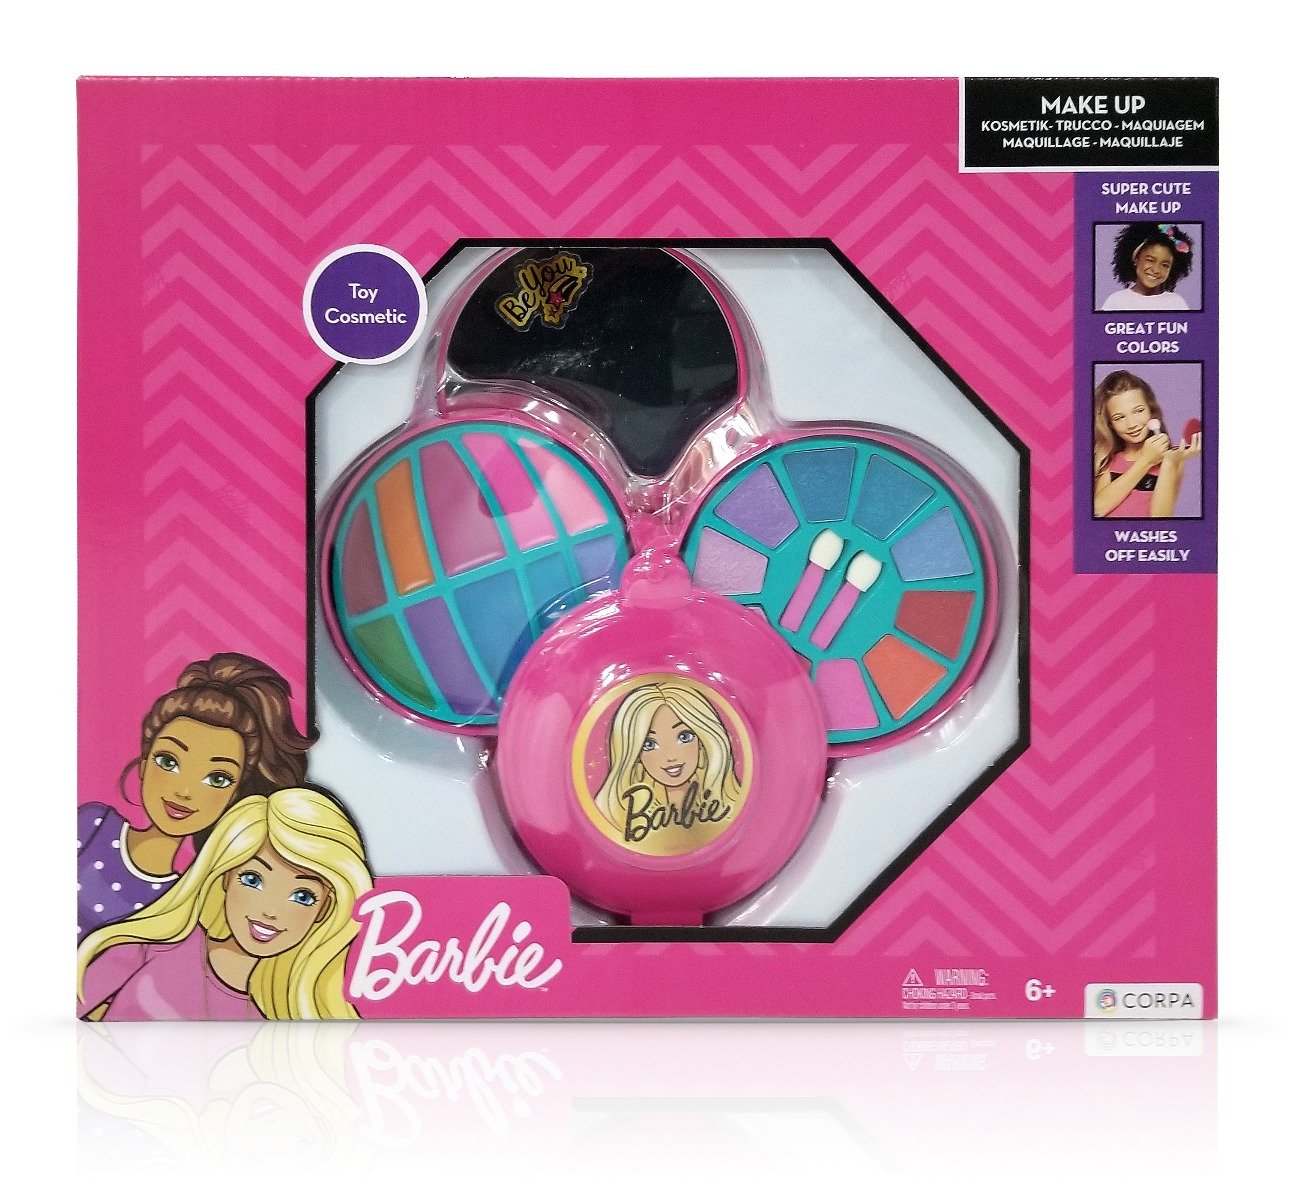 Set de cosmetice in caseta rotunda, cu 3 niveluri, Barbie Barbie